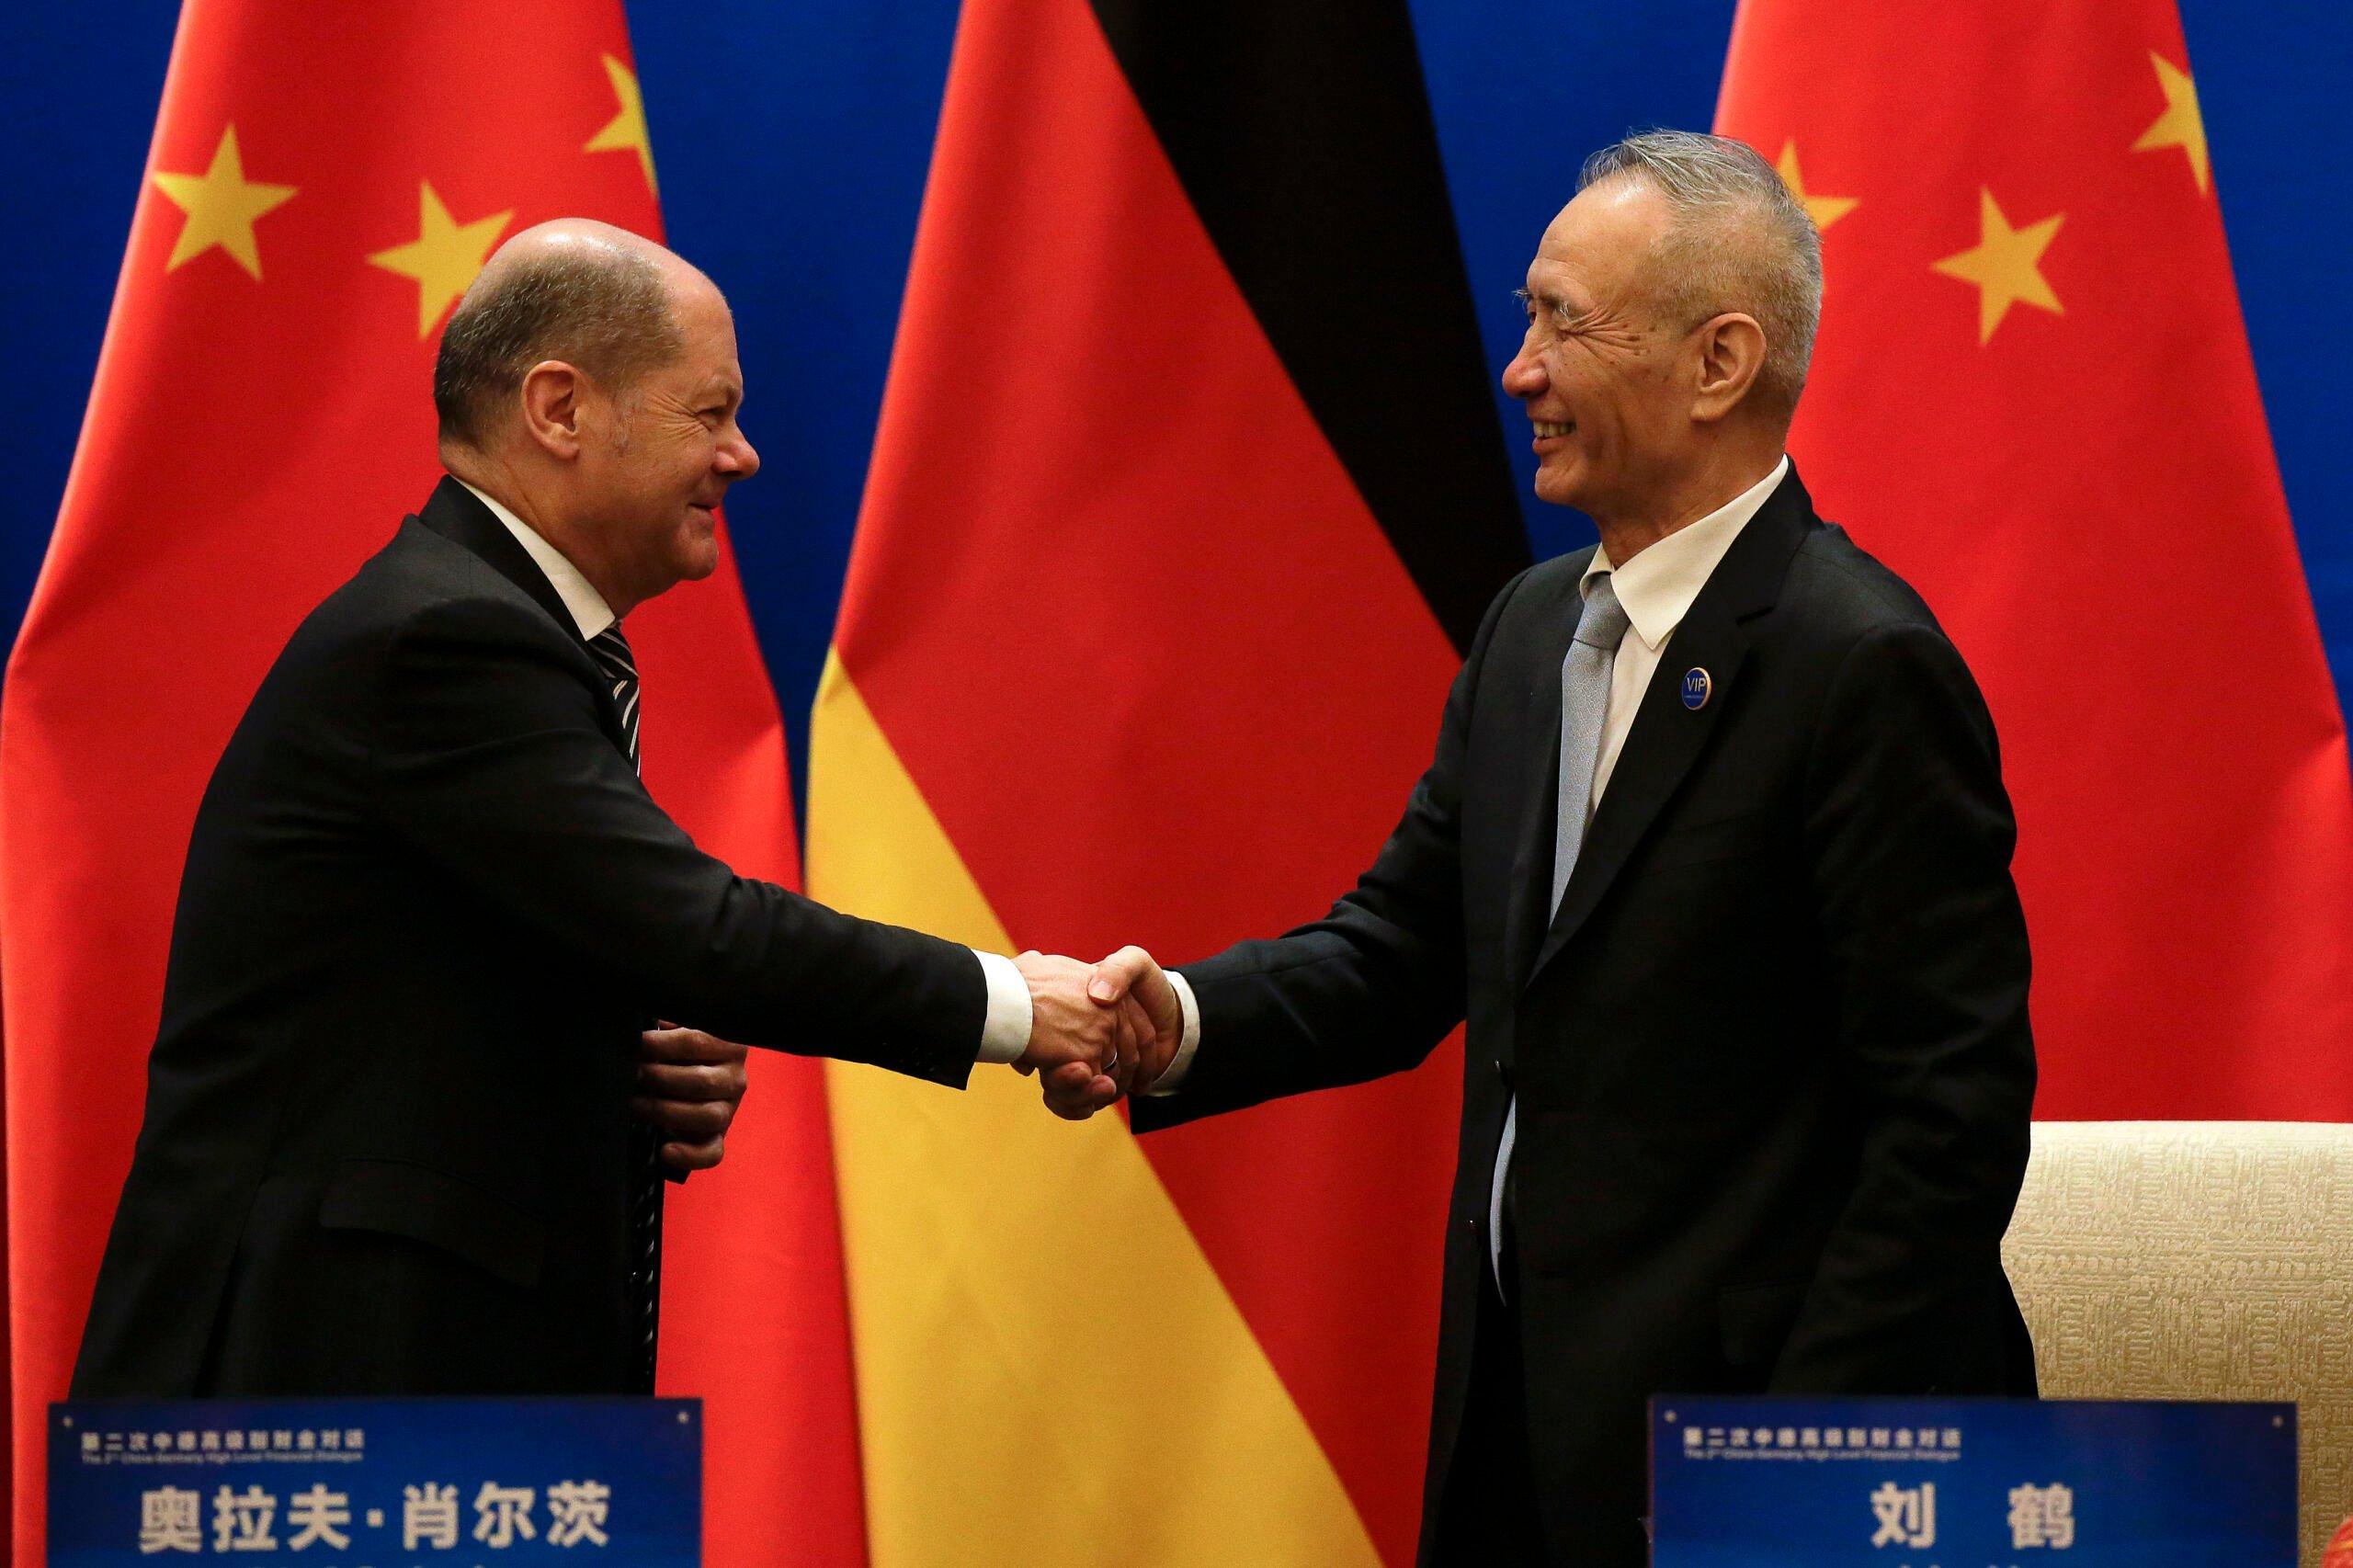 Europejczyk i Chińczyk ściskający sobie ręce na tle flag Chin i Niemiec